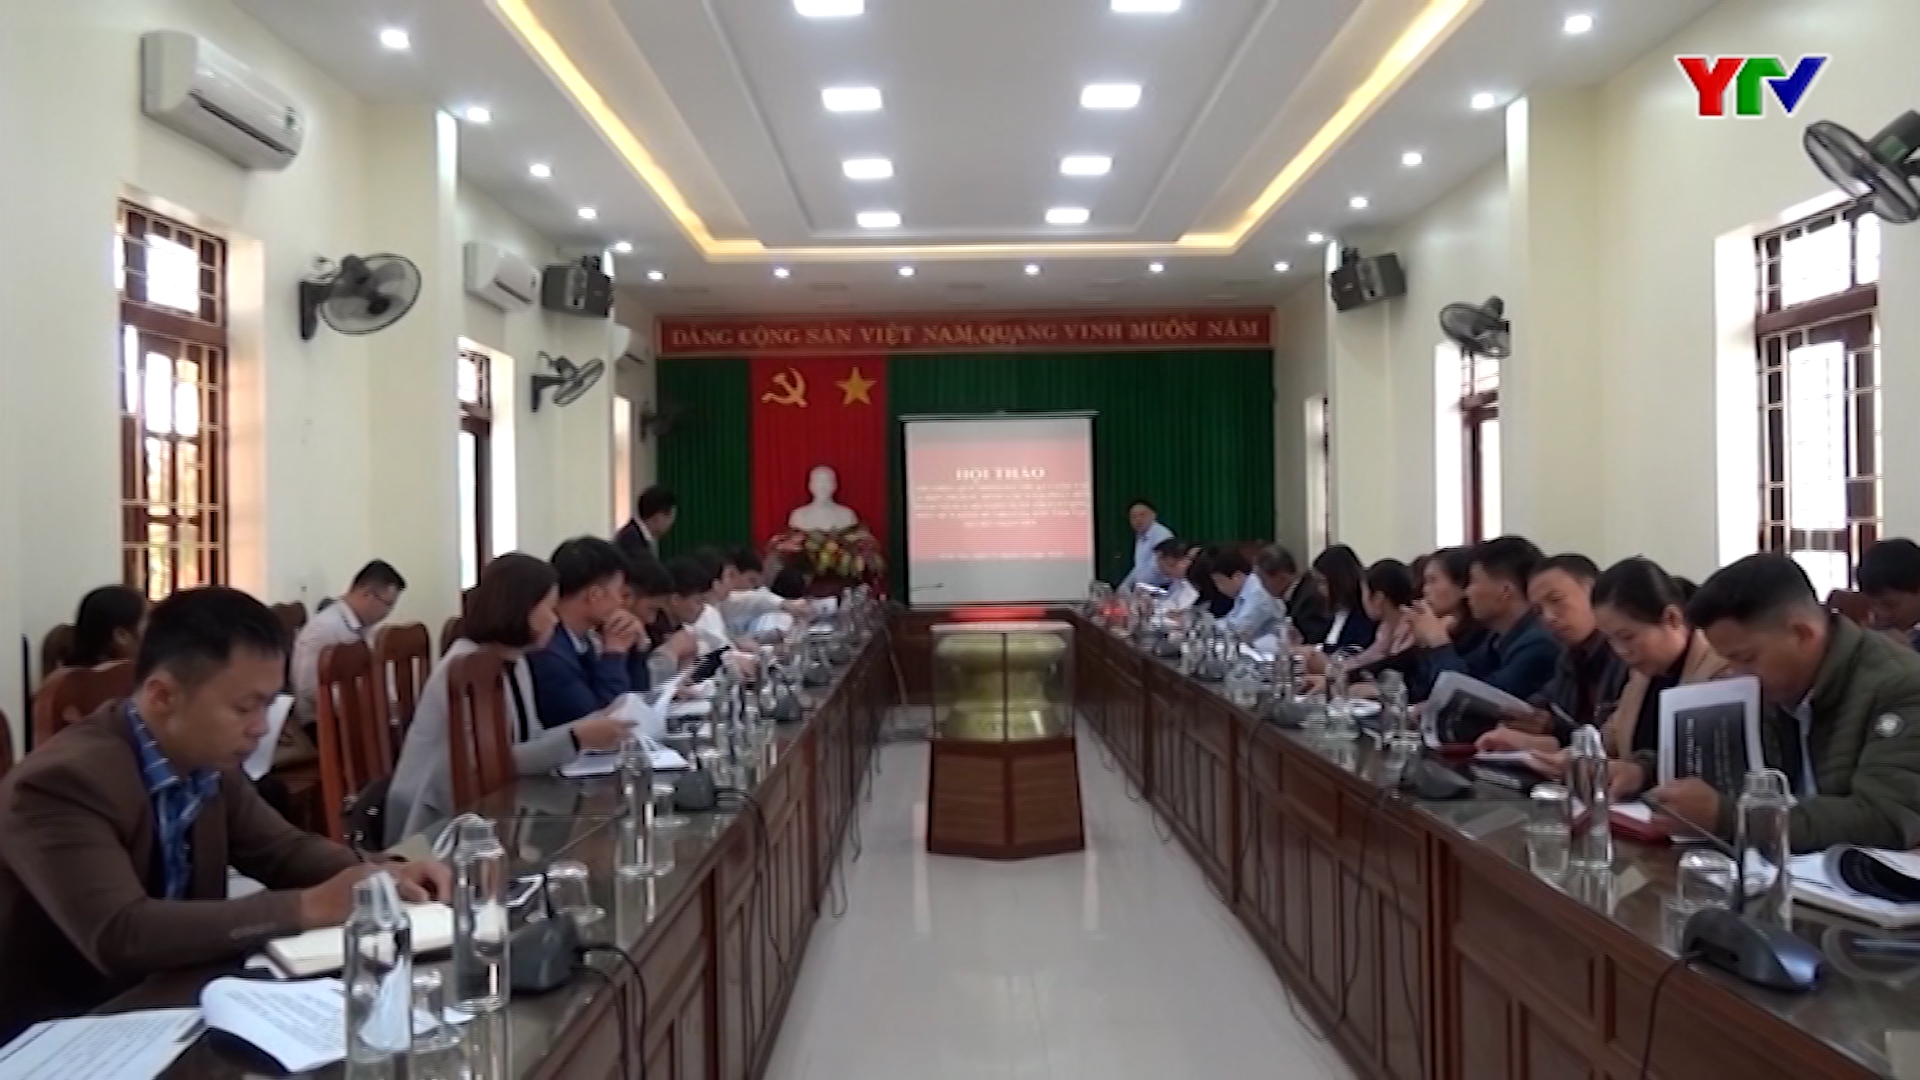 Huyện Trấn Yên tổ chức Hội thảo giới thiệu quy trình kỹ thuật canh tác và biện pháp nâng cao hiệu quả kinh tế cho cây dâu